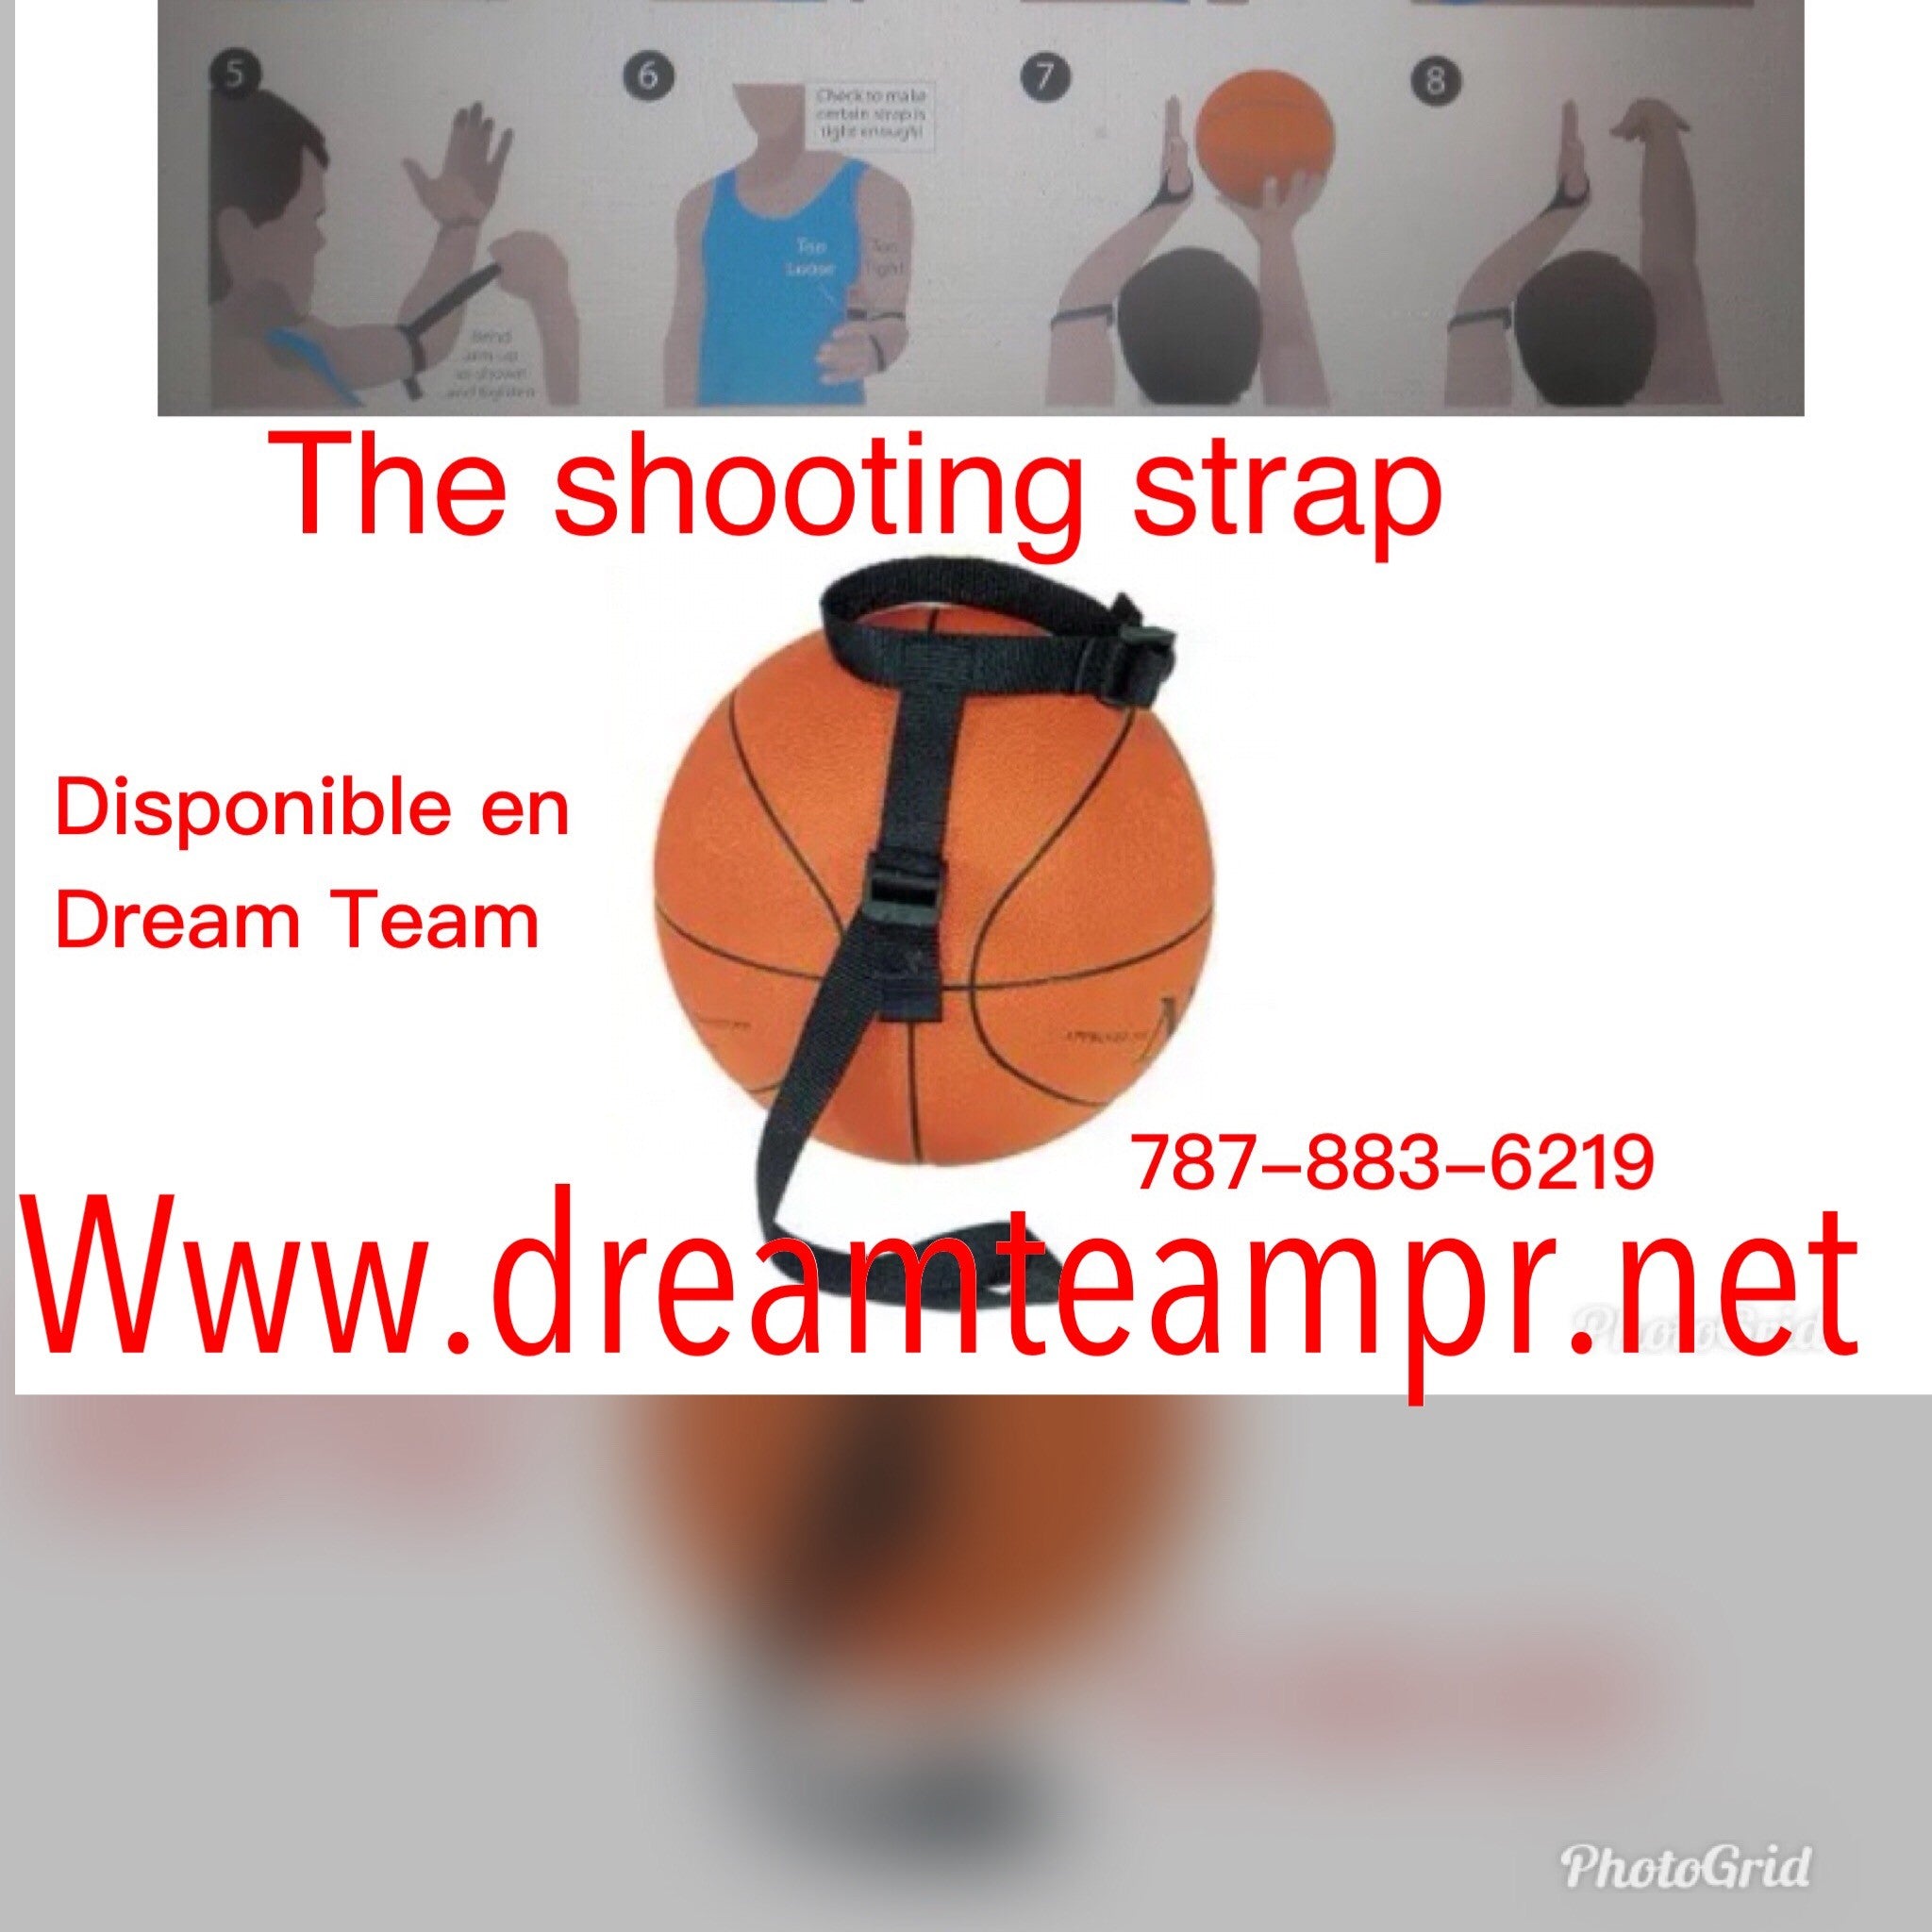 Baloncesto - “Basketball shooting strap”